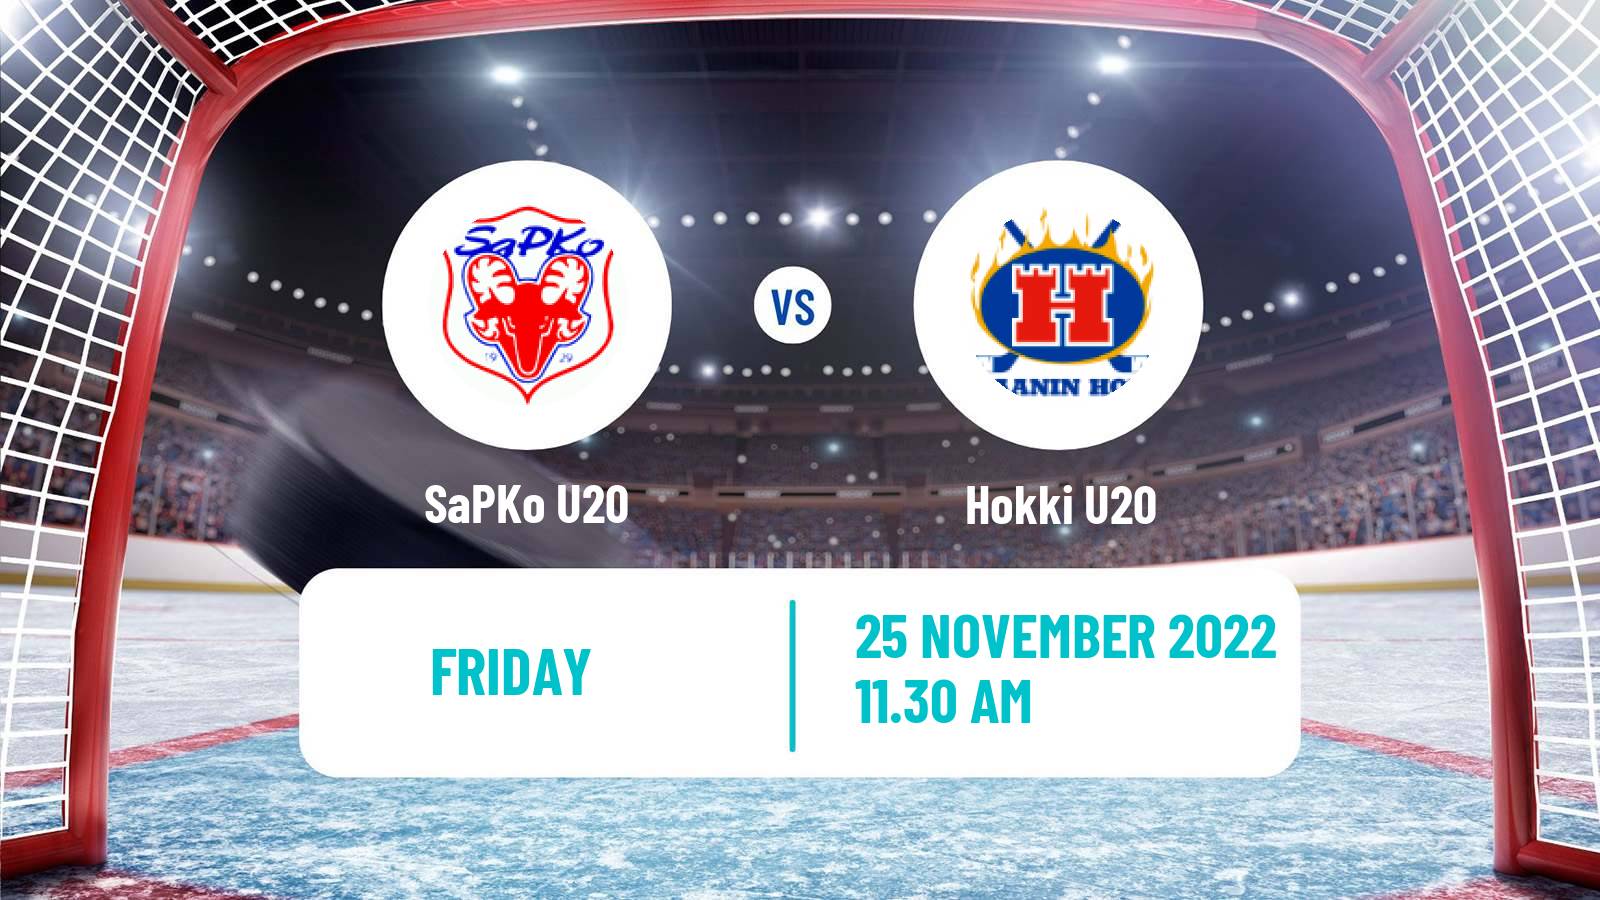 Hockey Finnish SM-sarja U20 SaPKo U20 - Hokki U20